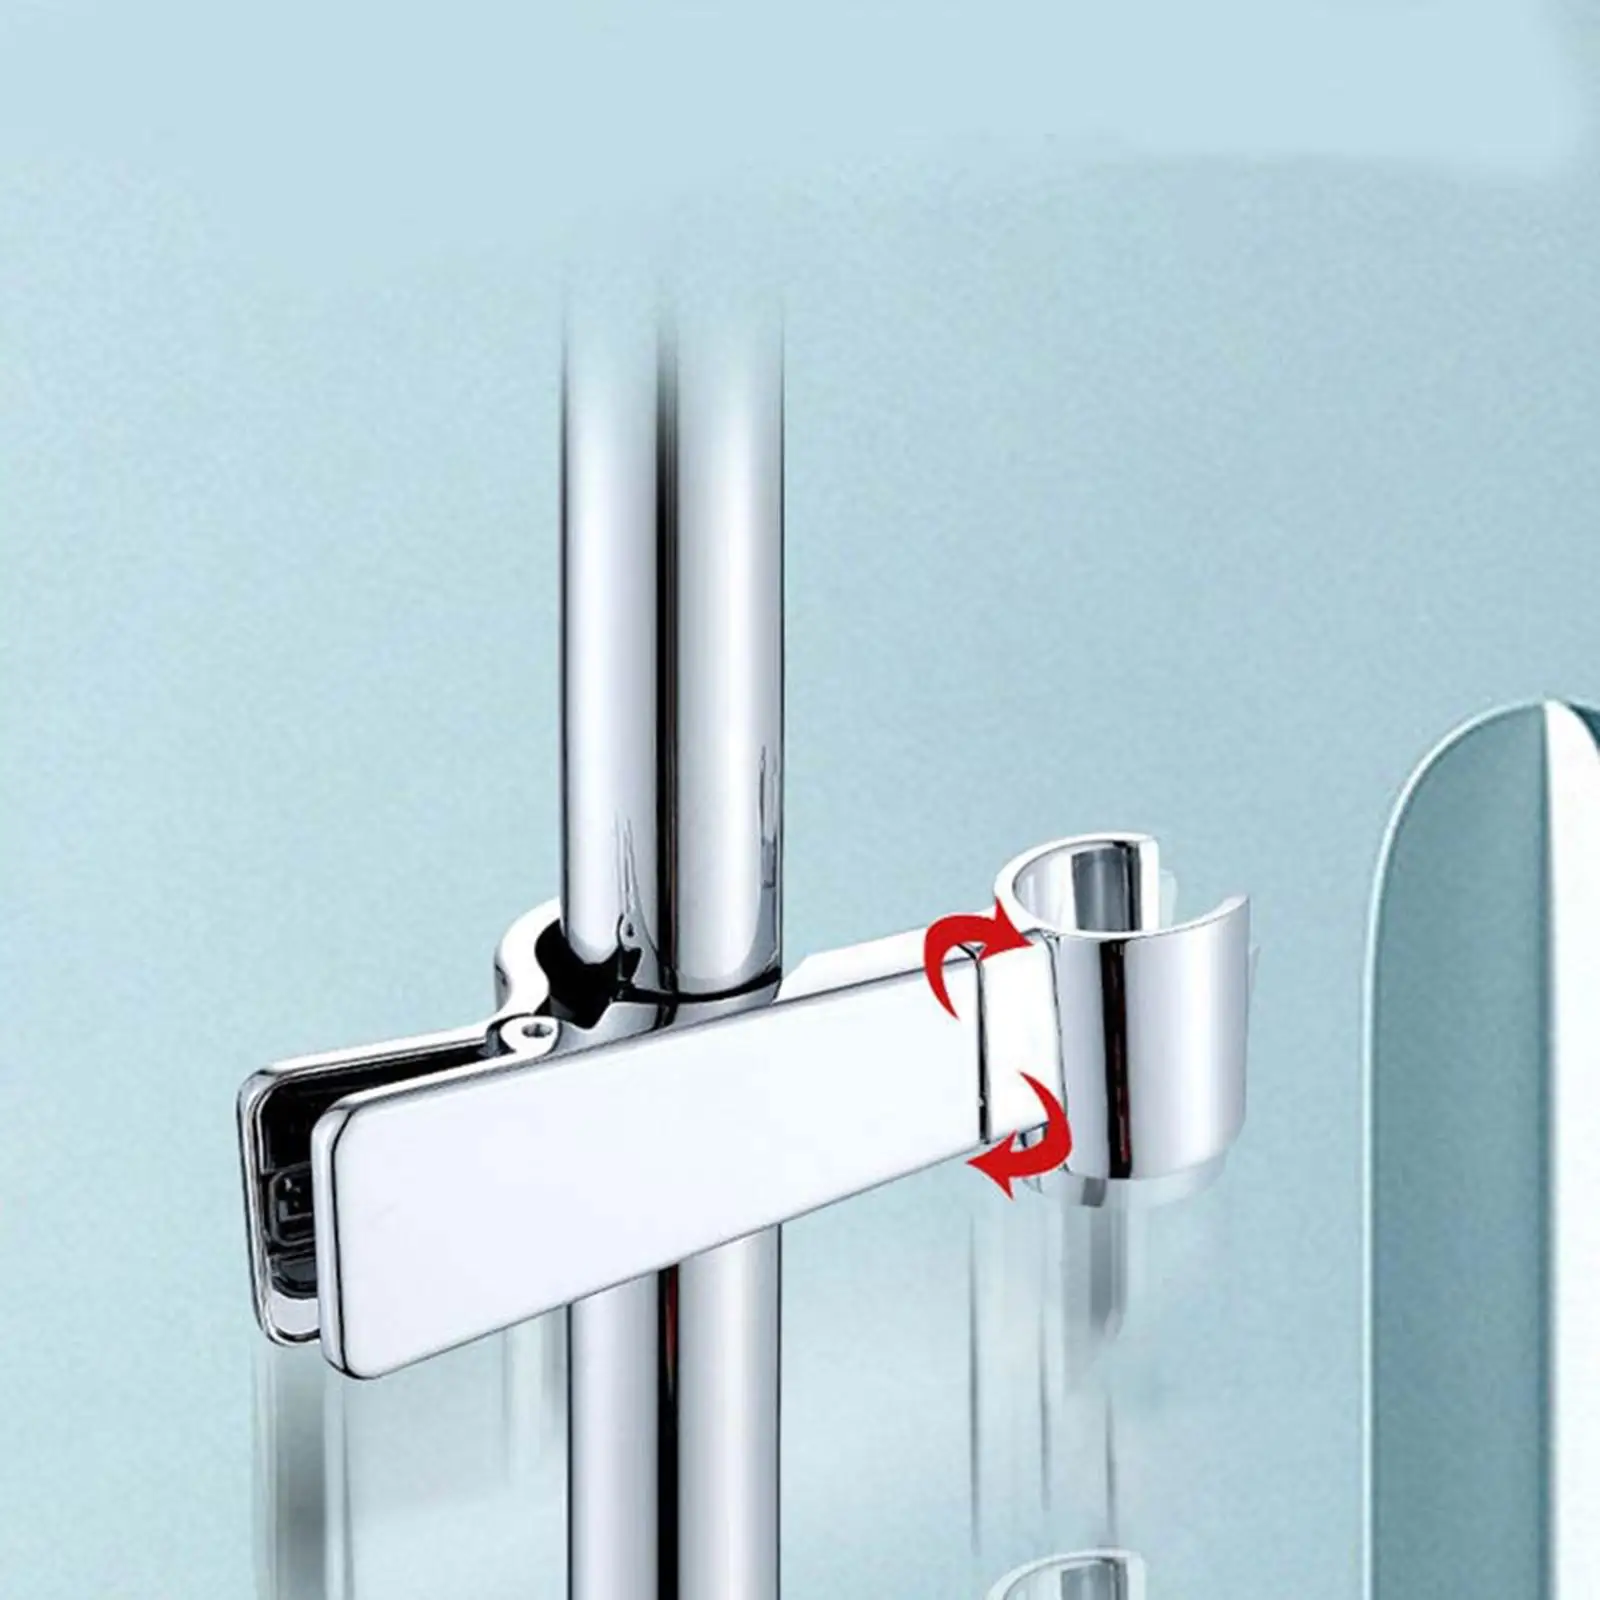 Adjustable Shower Bracket Shower 45 Degree Rotation Non Slip Design Shower Bracket for Hand Shower Head Slide Bar